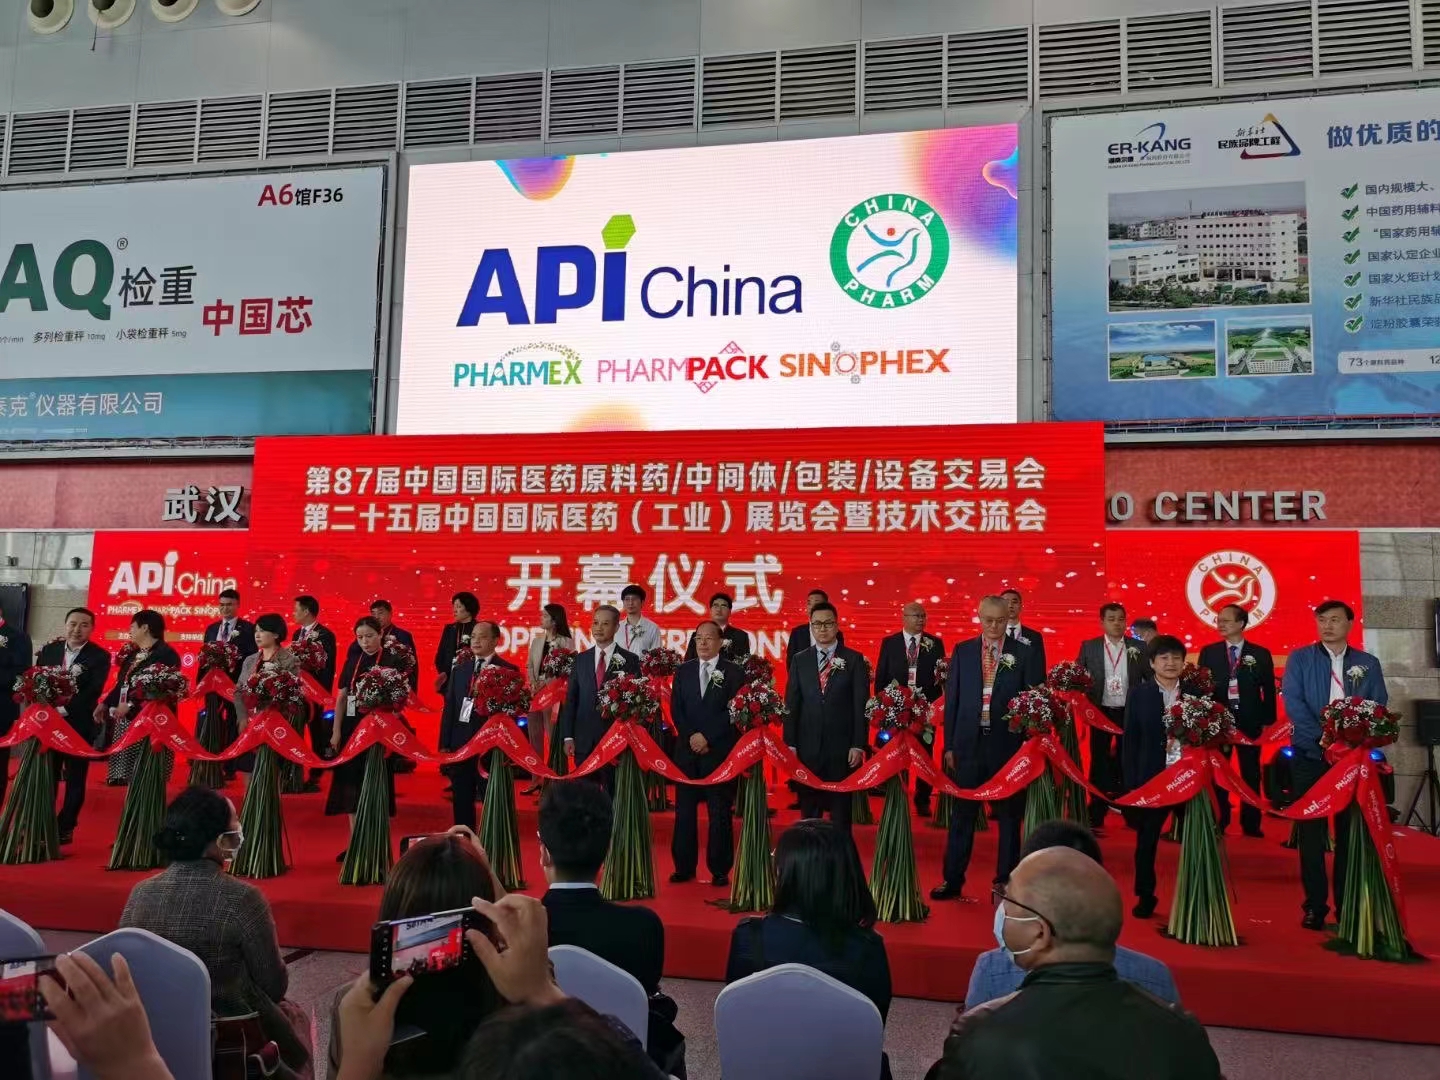 Dadalo ang 87th China International Pharmaceutical Apis/Intermediates/Packaging/Equipment Fair (API China) -Shanghai Ruifu Chemical Co., Ltd. kasama ng mga customer.